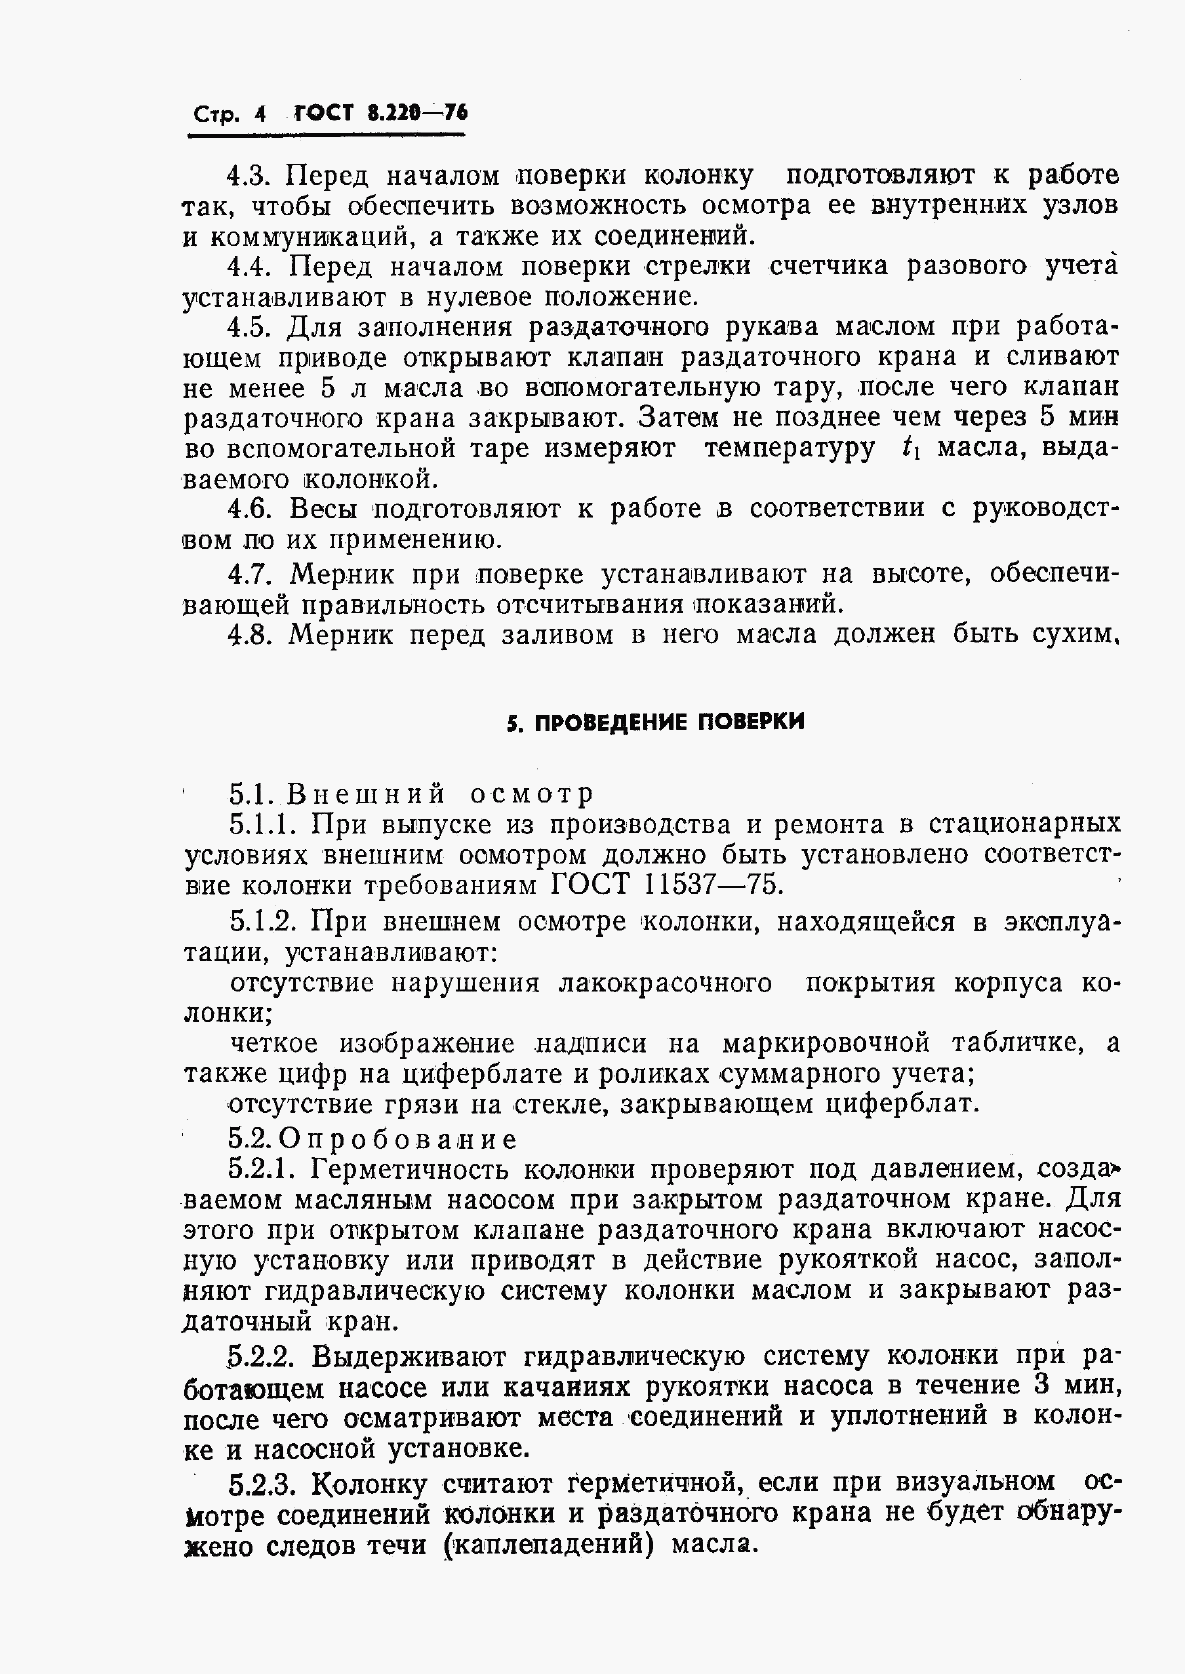 ГОСТ 8.220-76, страница 7